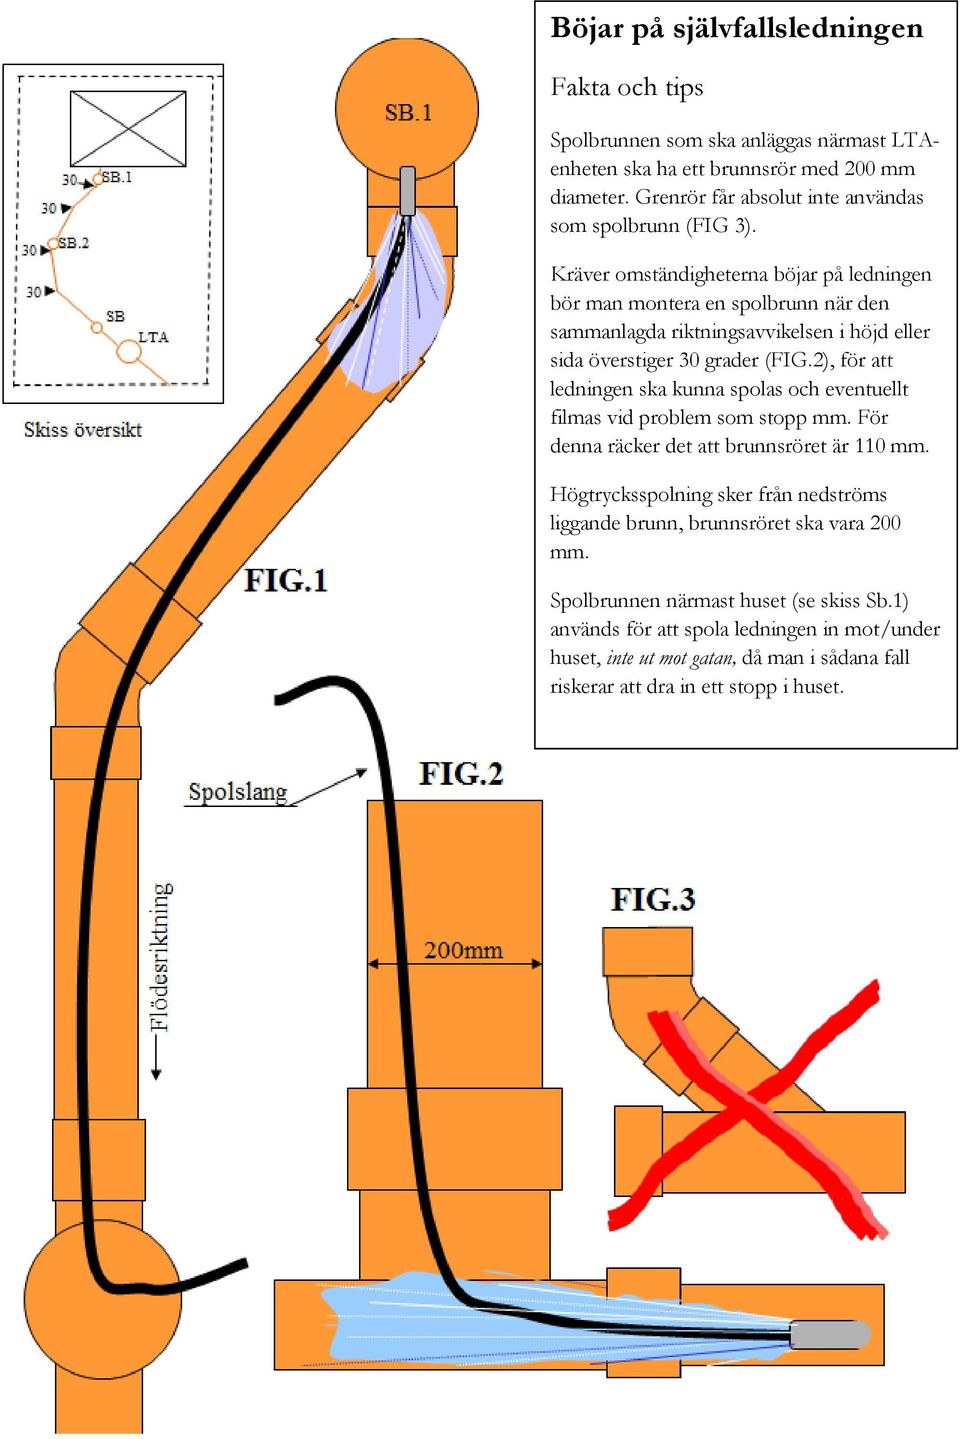 Kräver omständigheterna böjar på ledningen bör man montera en spolbrunn när den sammanlagda riktningsavvikelsen i höjd eller sida överstiger 30 grader (FIG.